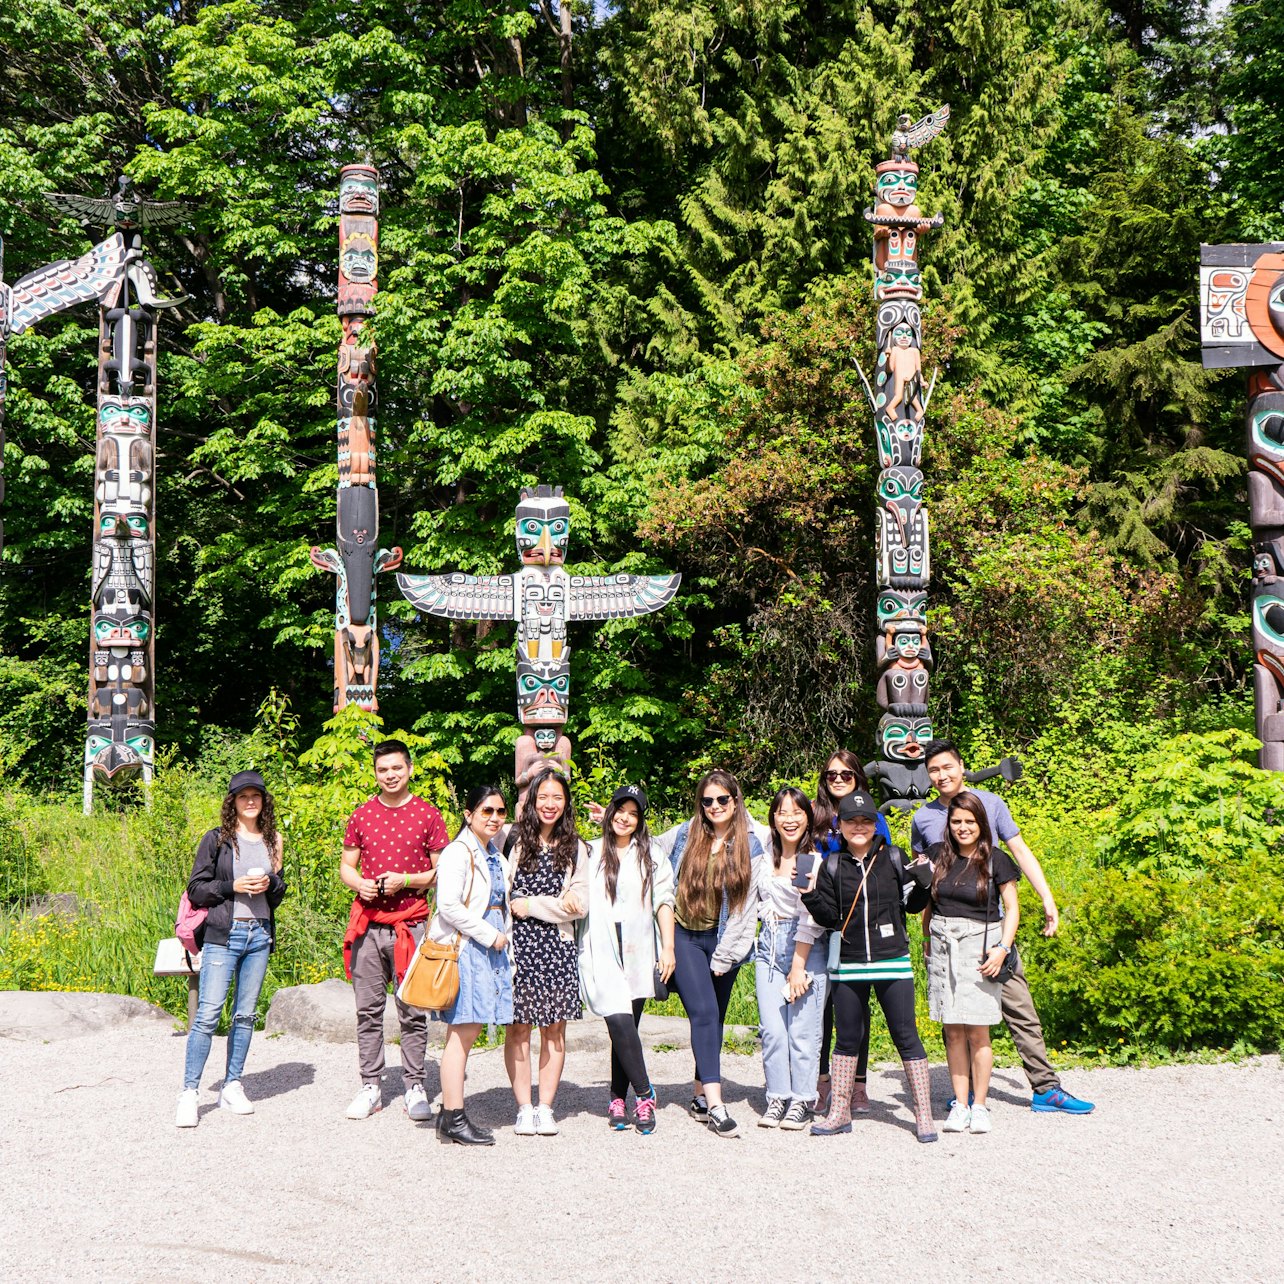 Visita guiada de ônibus a Vancouver com Stanley Park Walking Tour - Acomodações em Vancouver